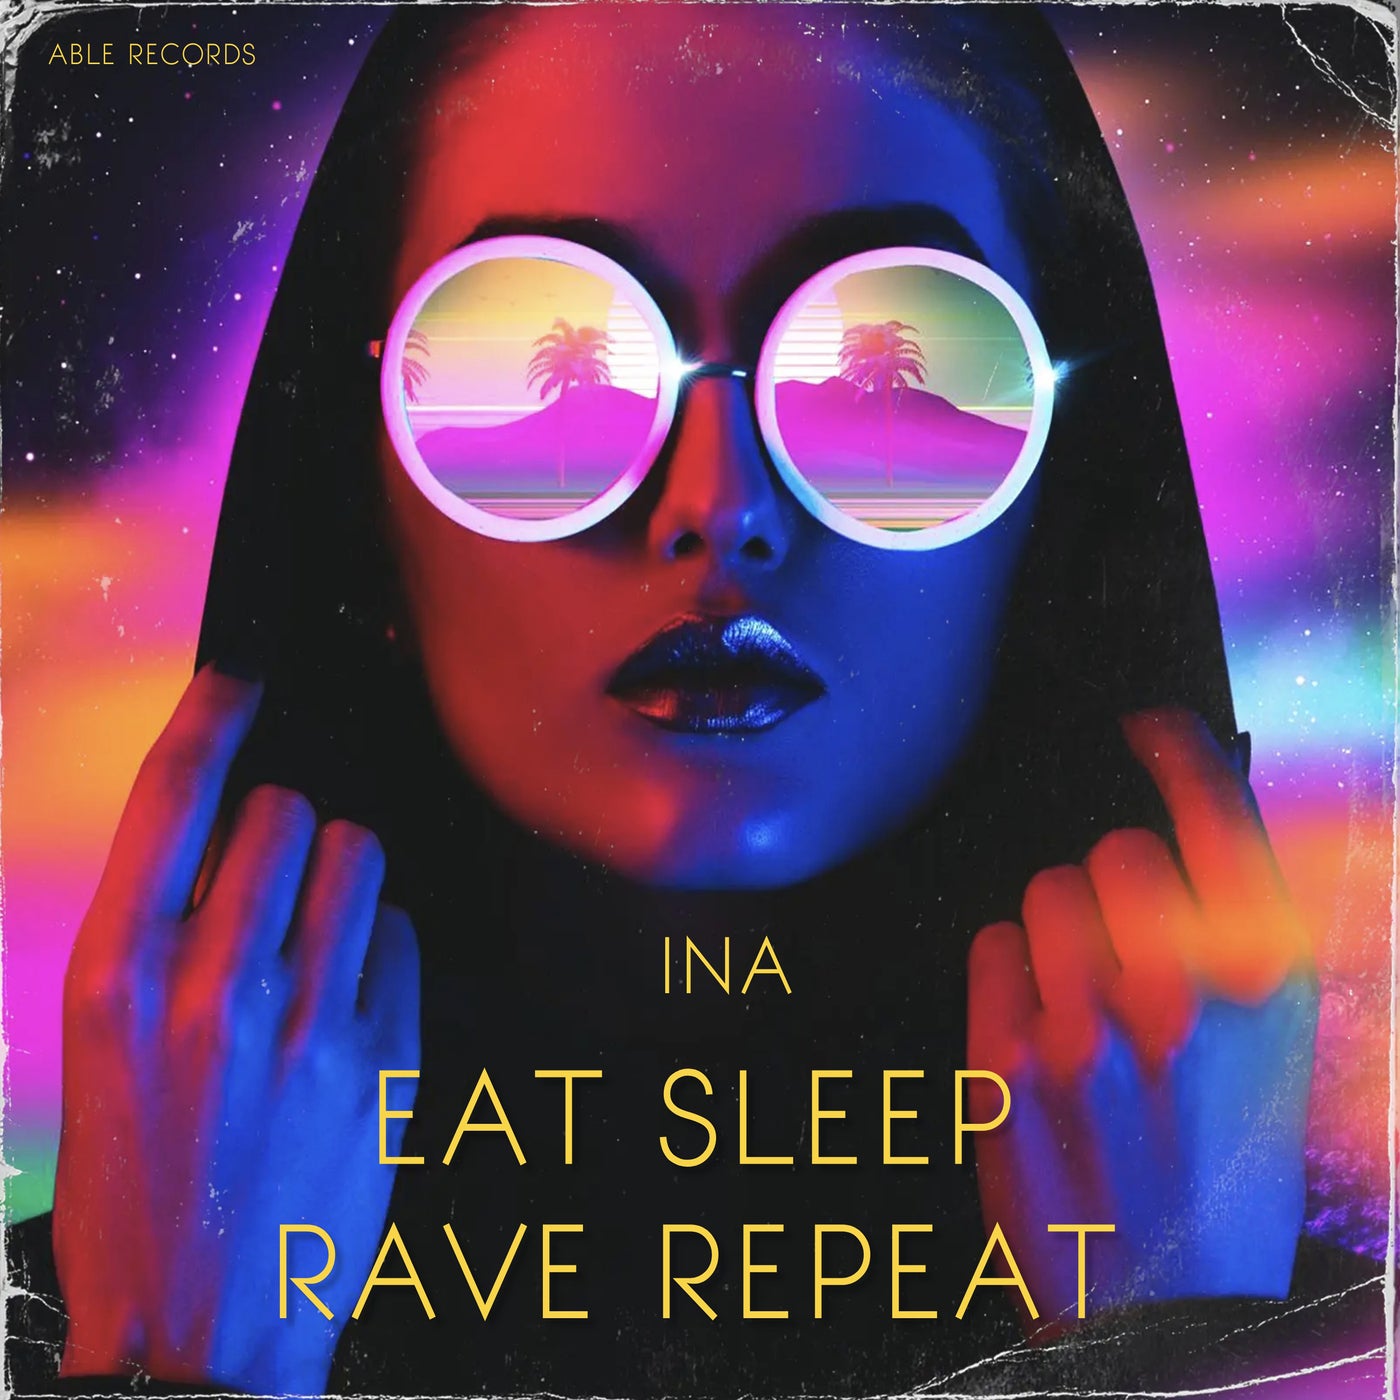 Eat, Sleep, Rave, Repeat